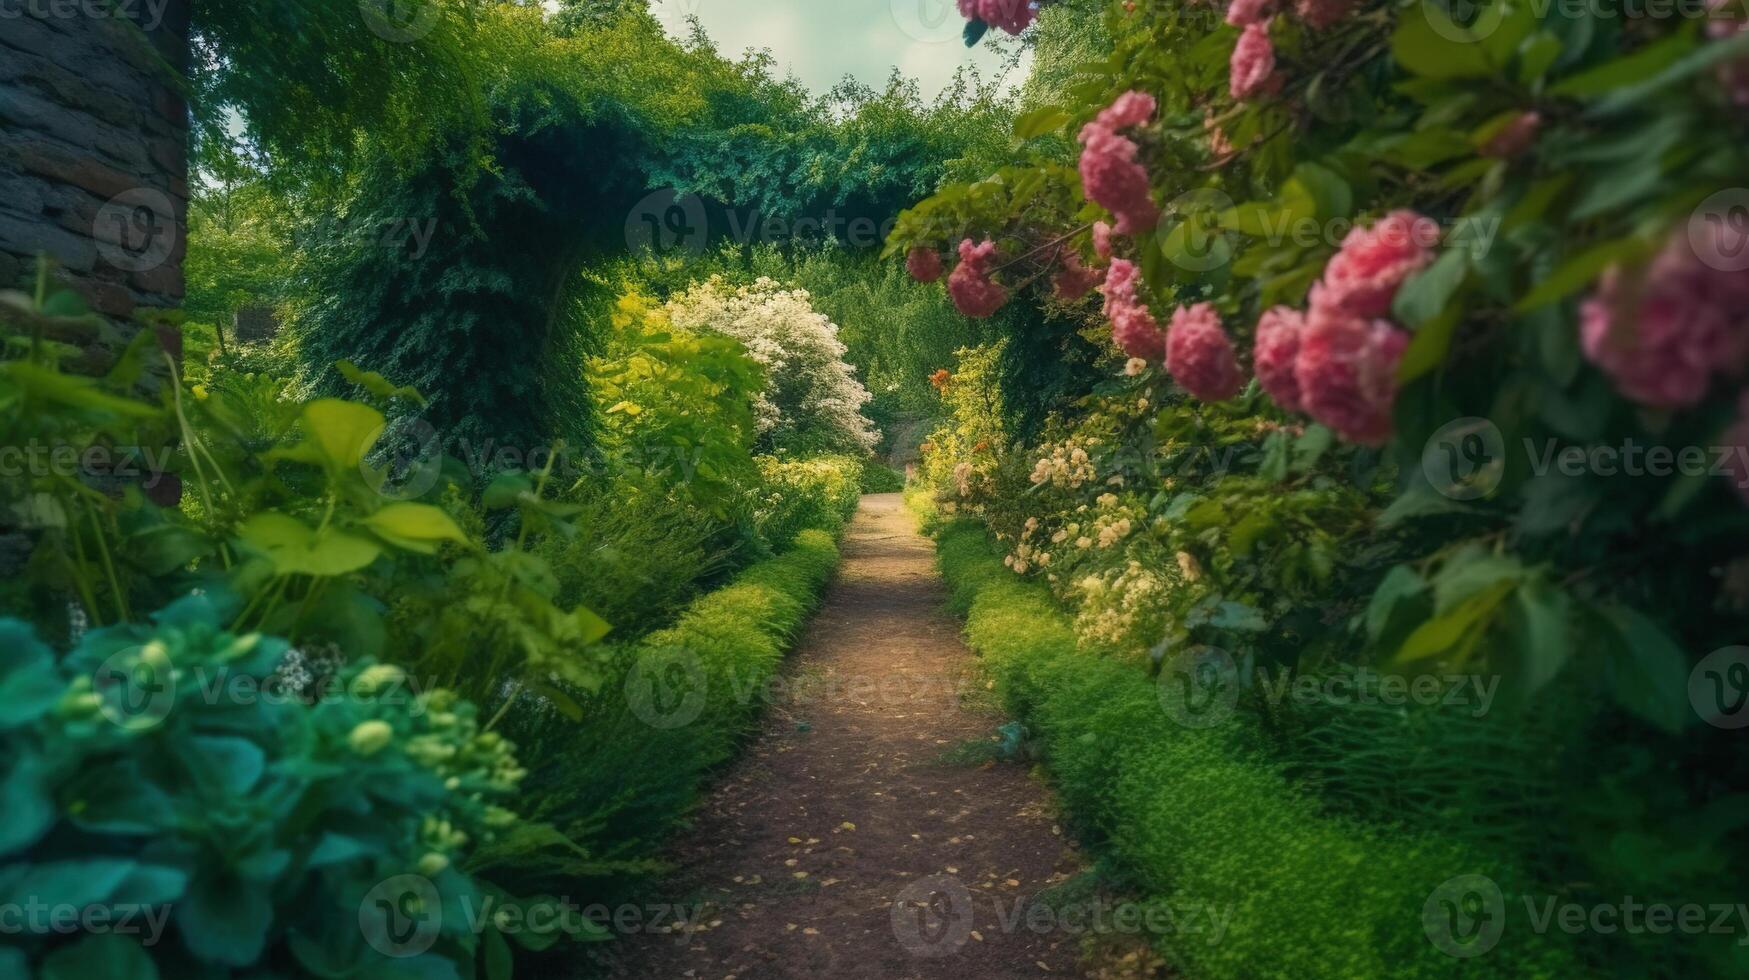 generativo ai, hermosa verano privado jardín con muchos flores y plantas, naturaleza paisaje, Inglés campo cabaña estilo foto